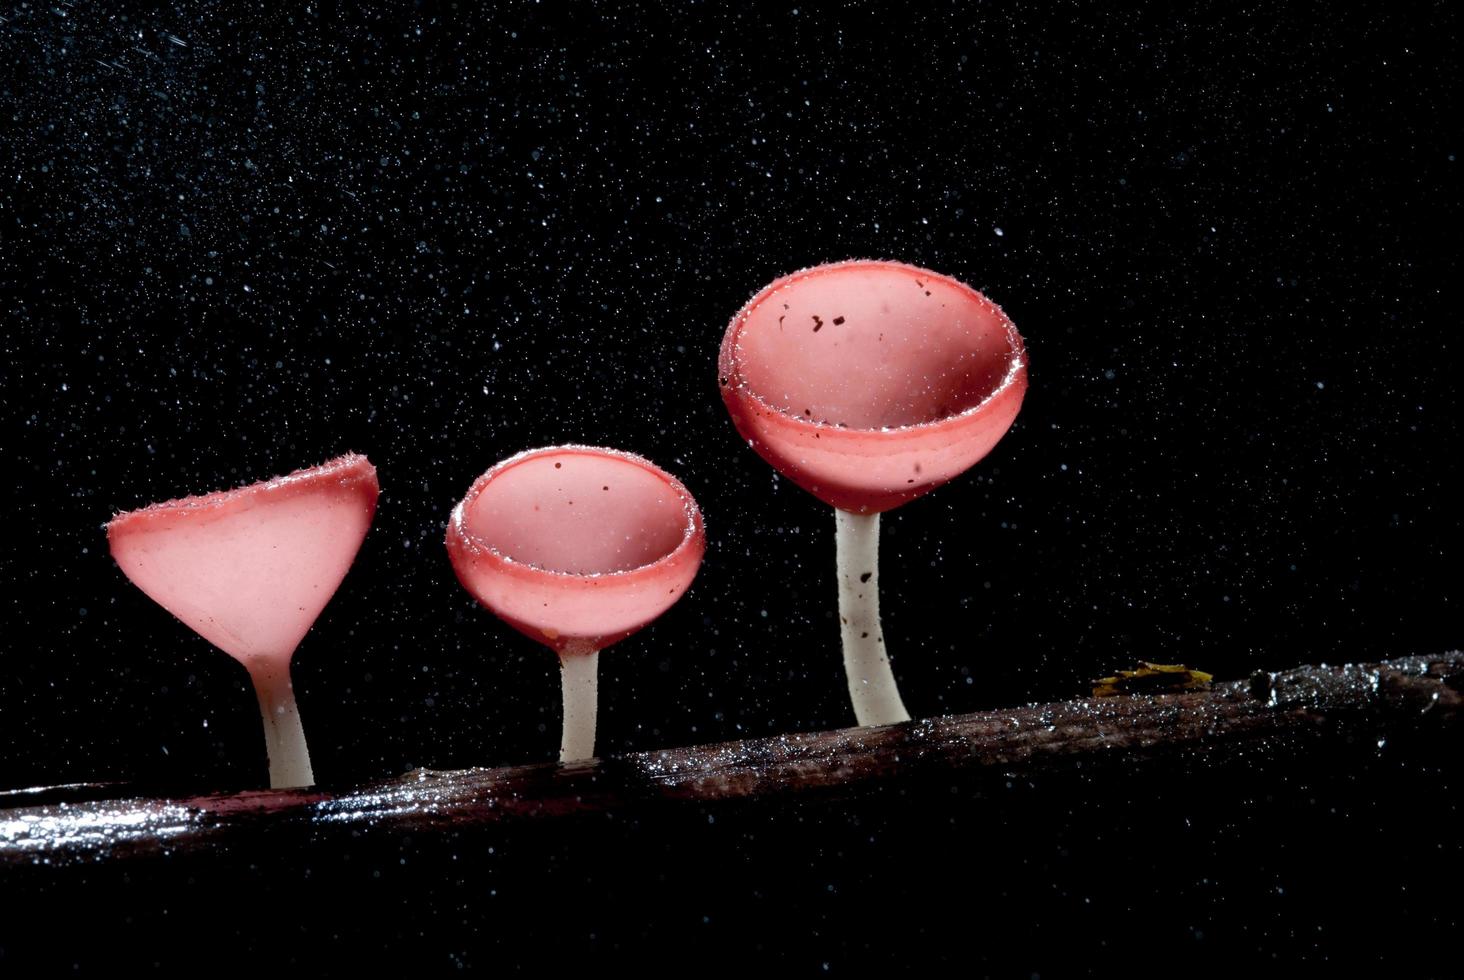 bellissimo fungo rosa champagne nella foresta pluviale foto